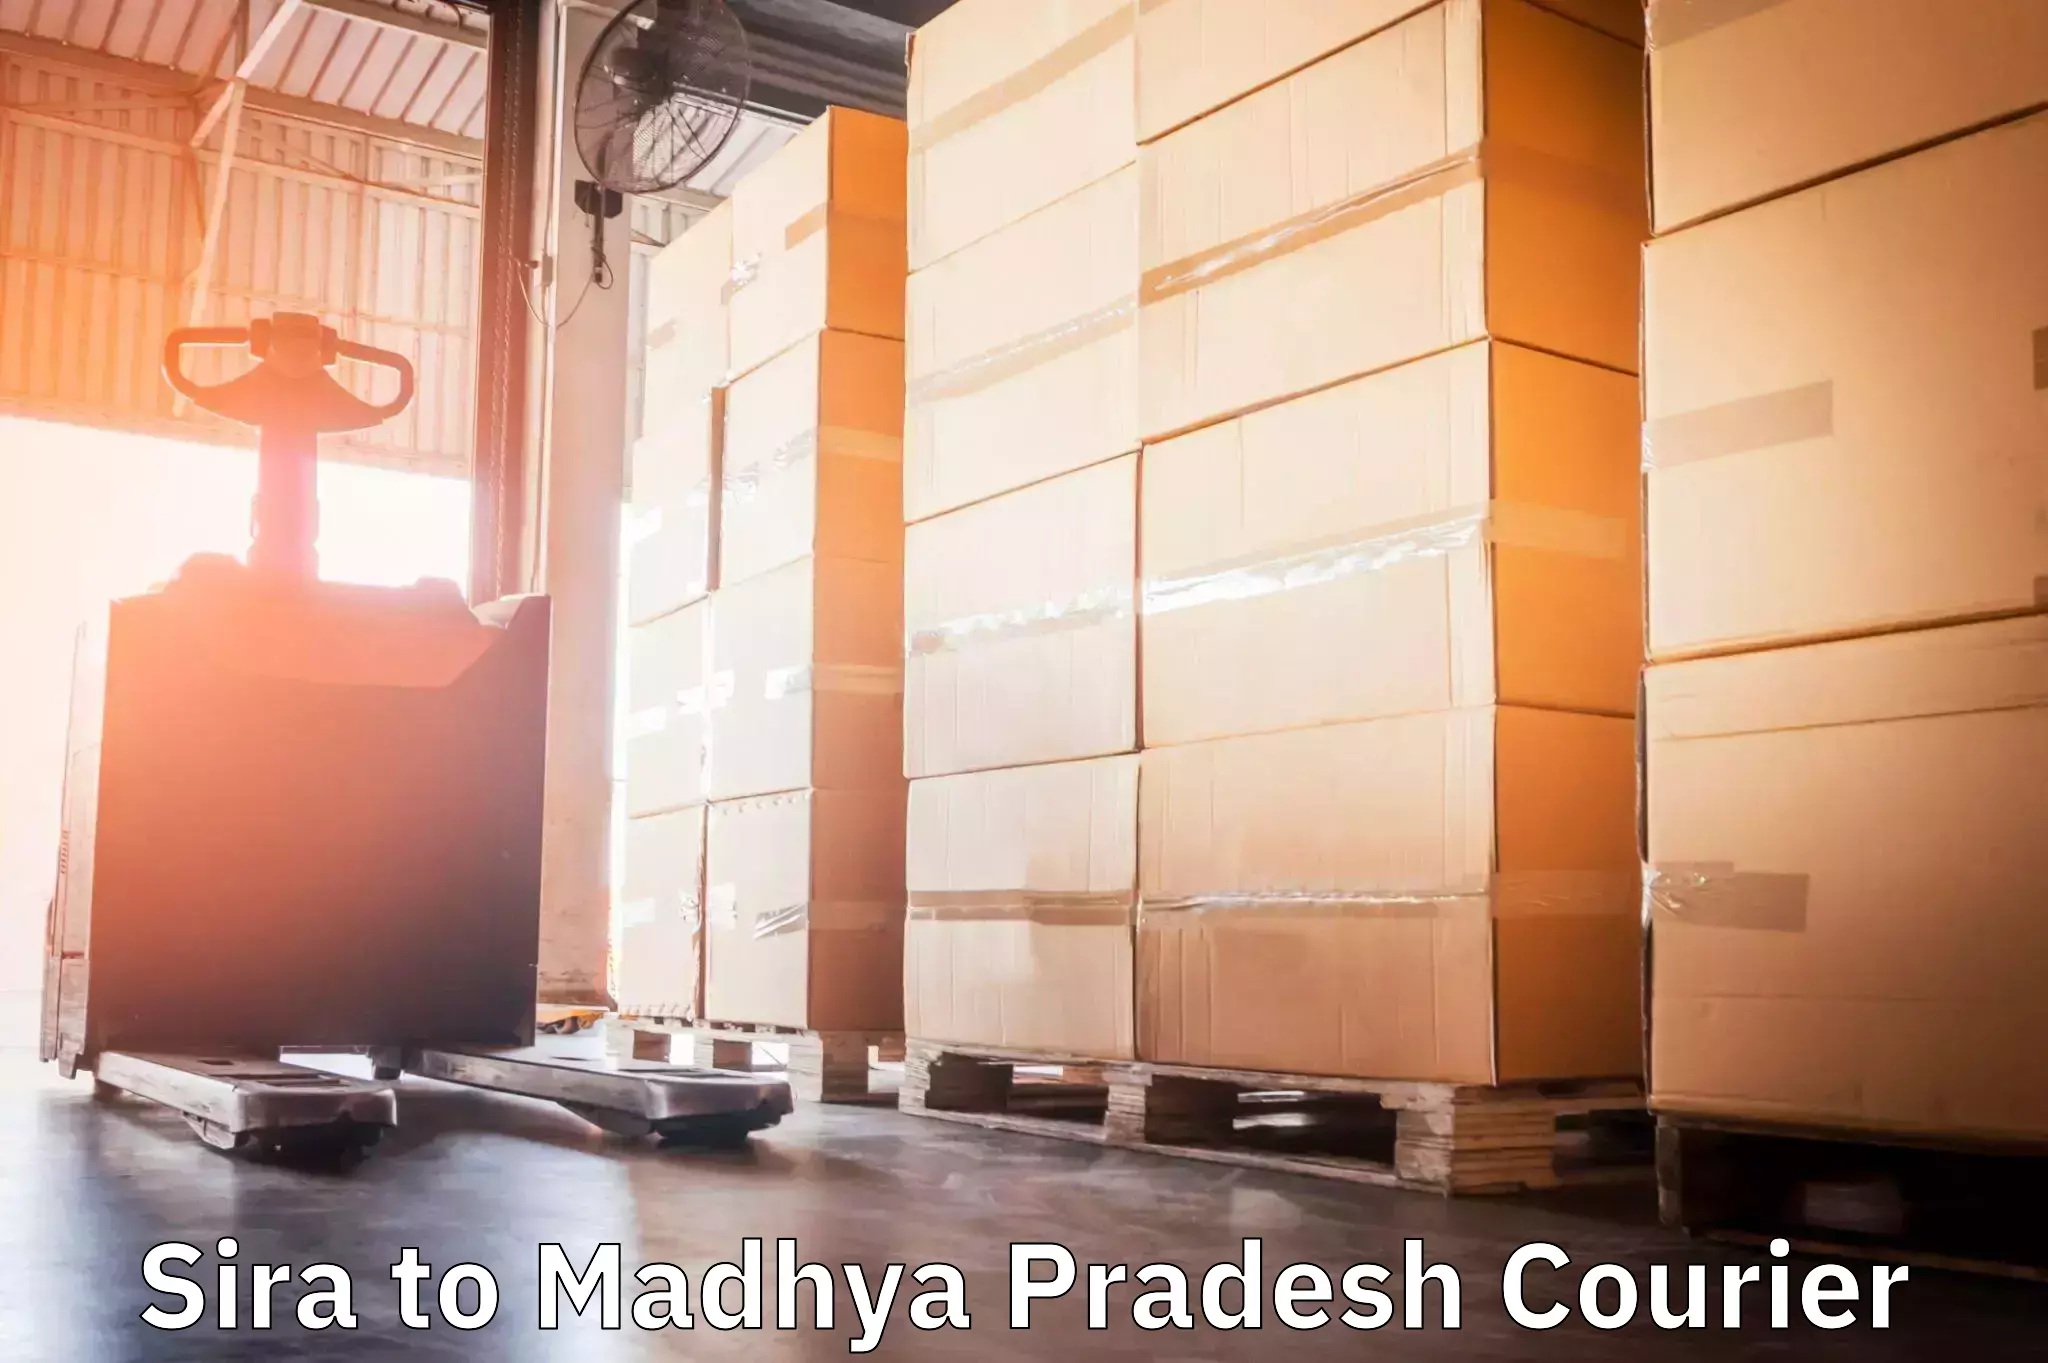 Courier insurance Sira to Madhya Pradesh